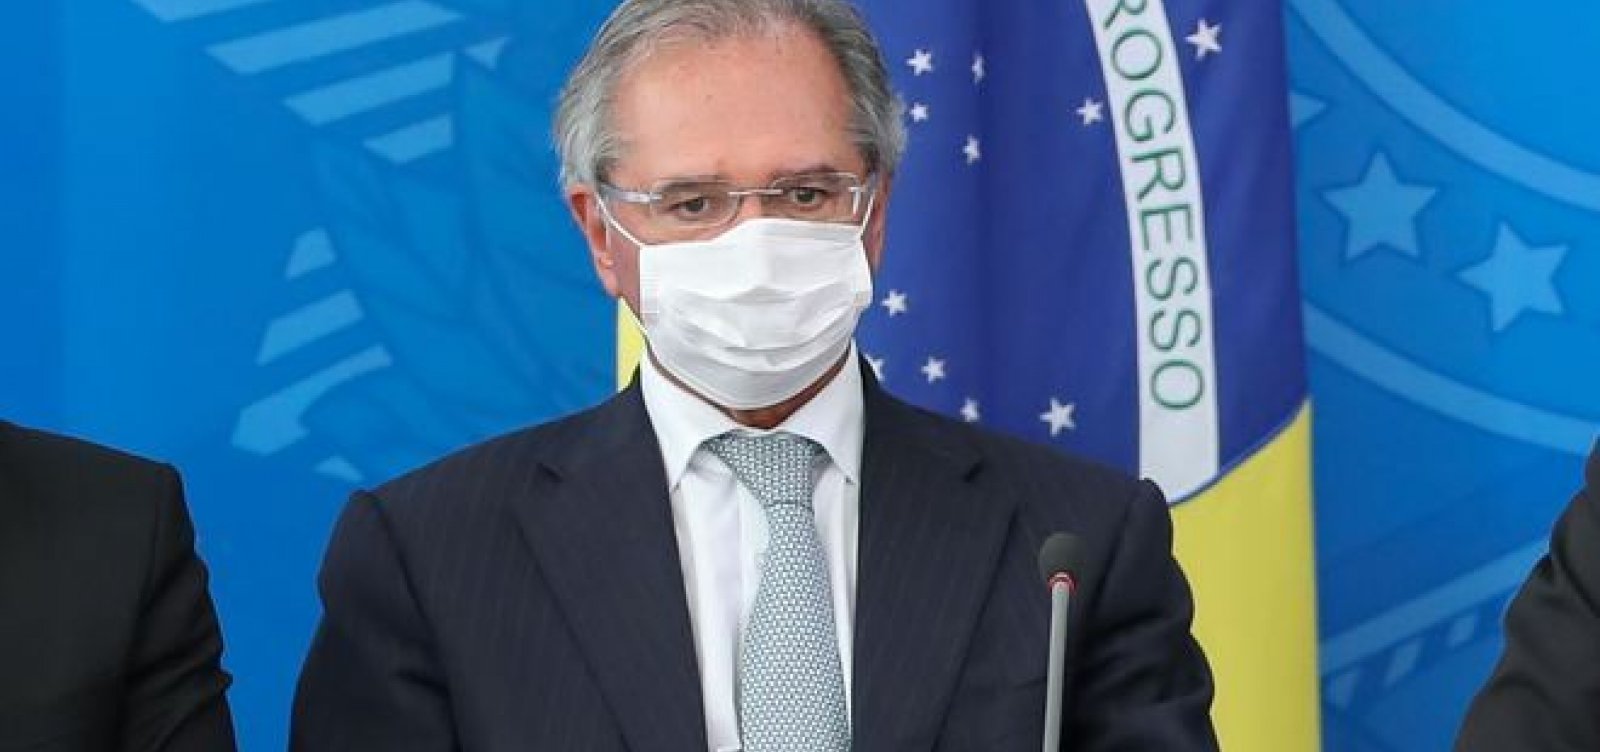 Coronavírus: Guedes diz que medidas de controle já chegam a 2,6% do PIB